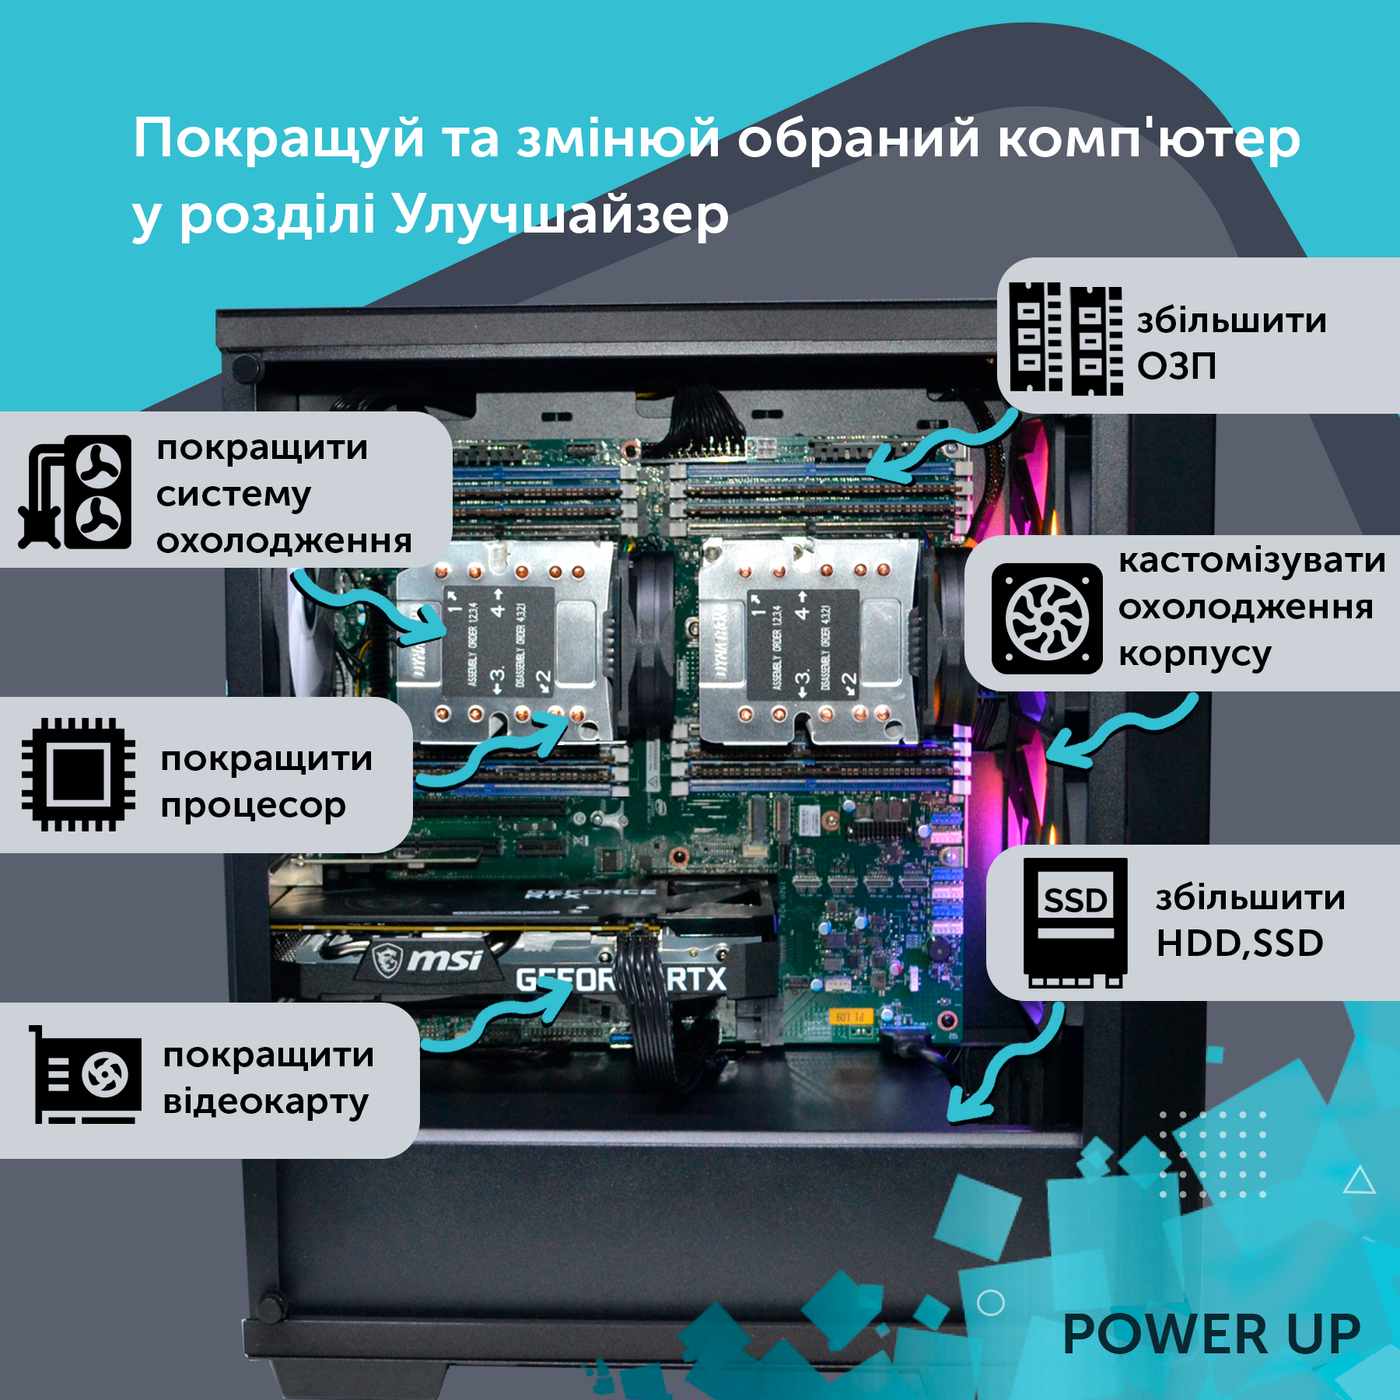 Двухпроцессорная рабочая станция PowerUp #212 Xeon E5 2673 v4 x2/128 GB/HDD 1 TB/SSD 512GB/NVIDIA Quadro RTX A4000 16GB